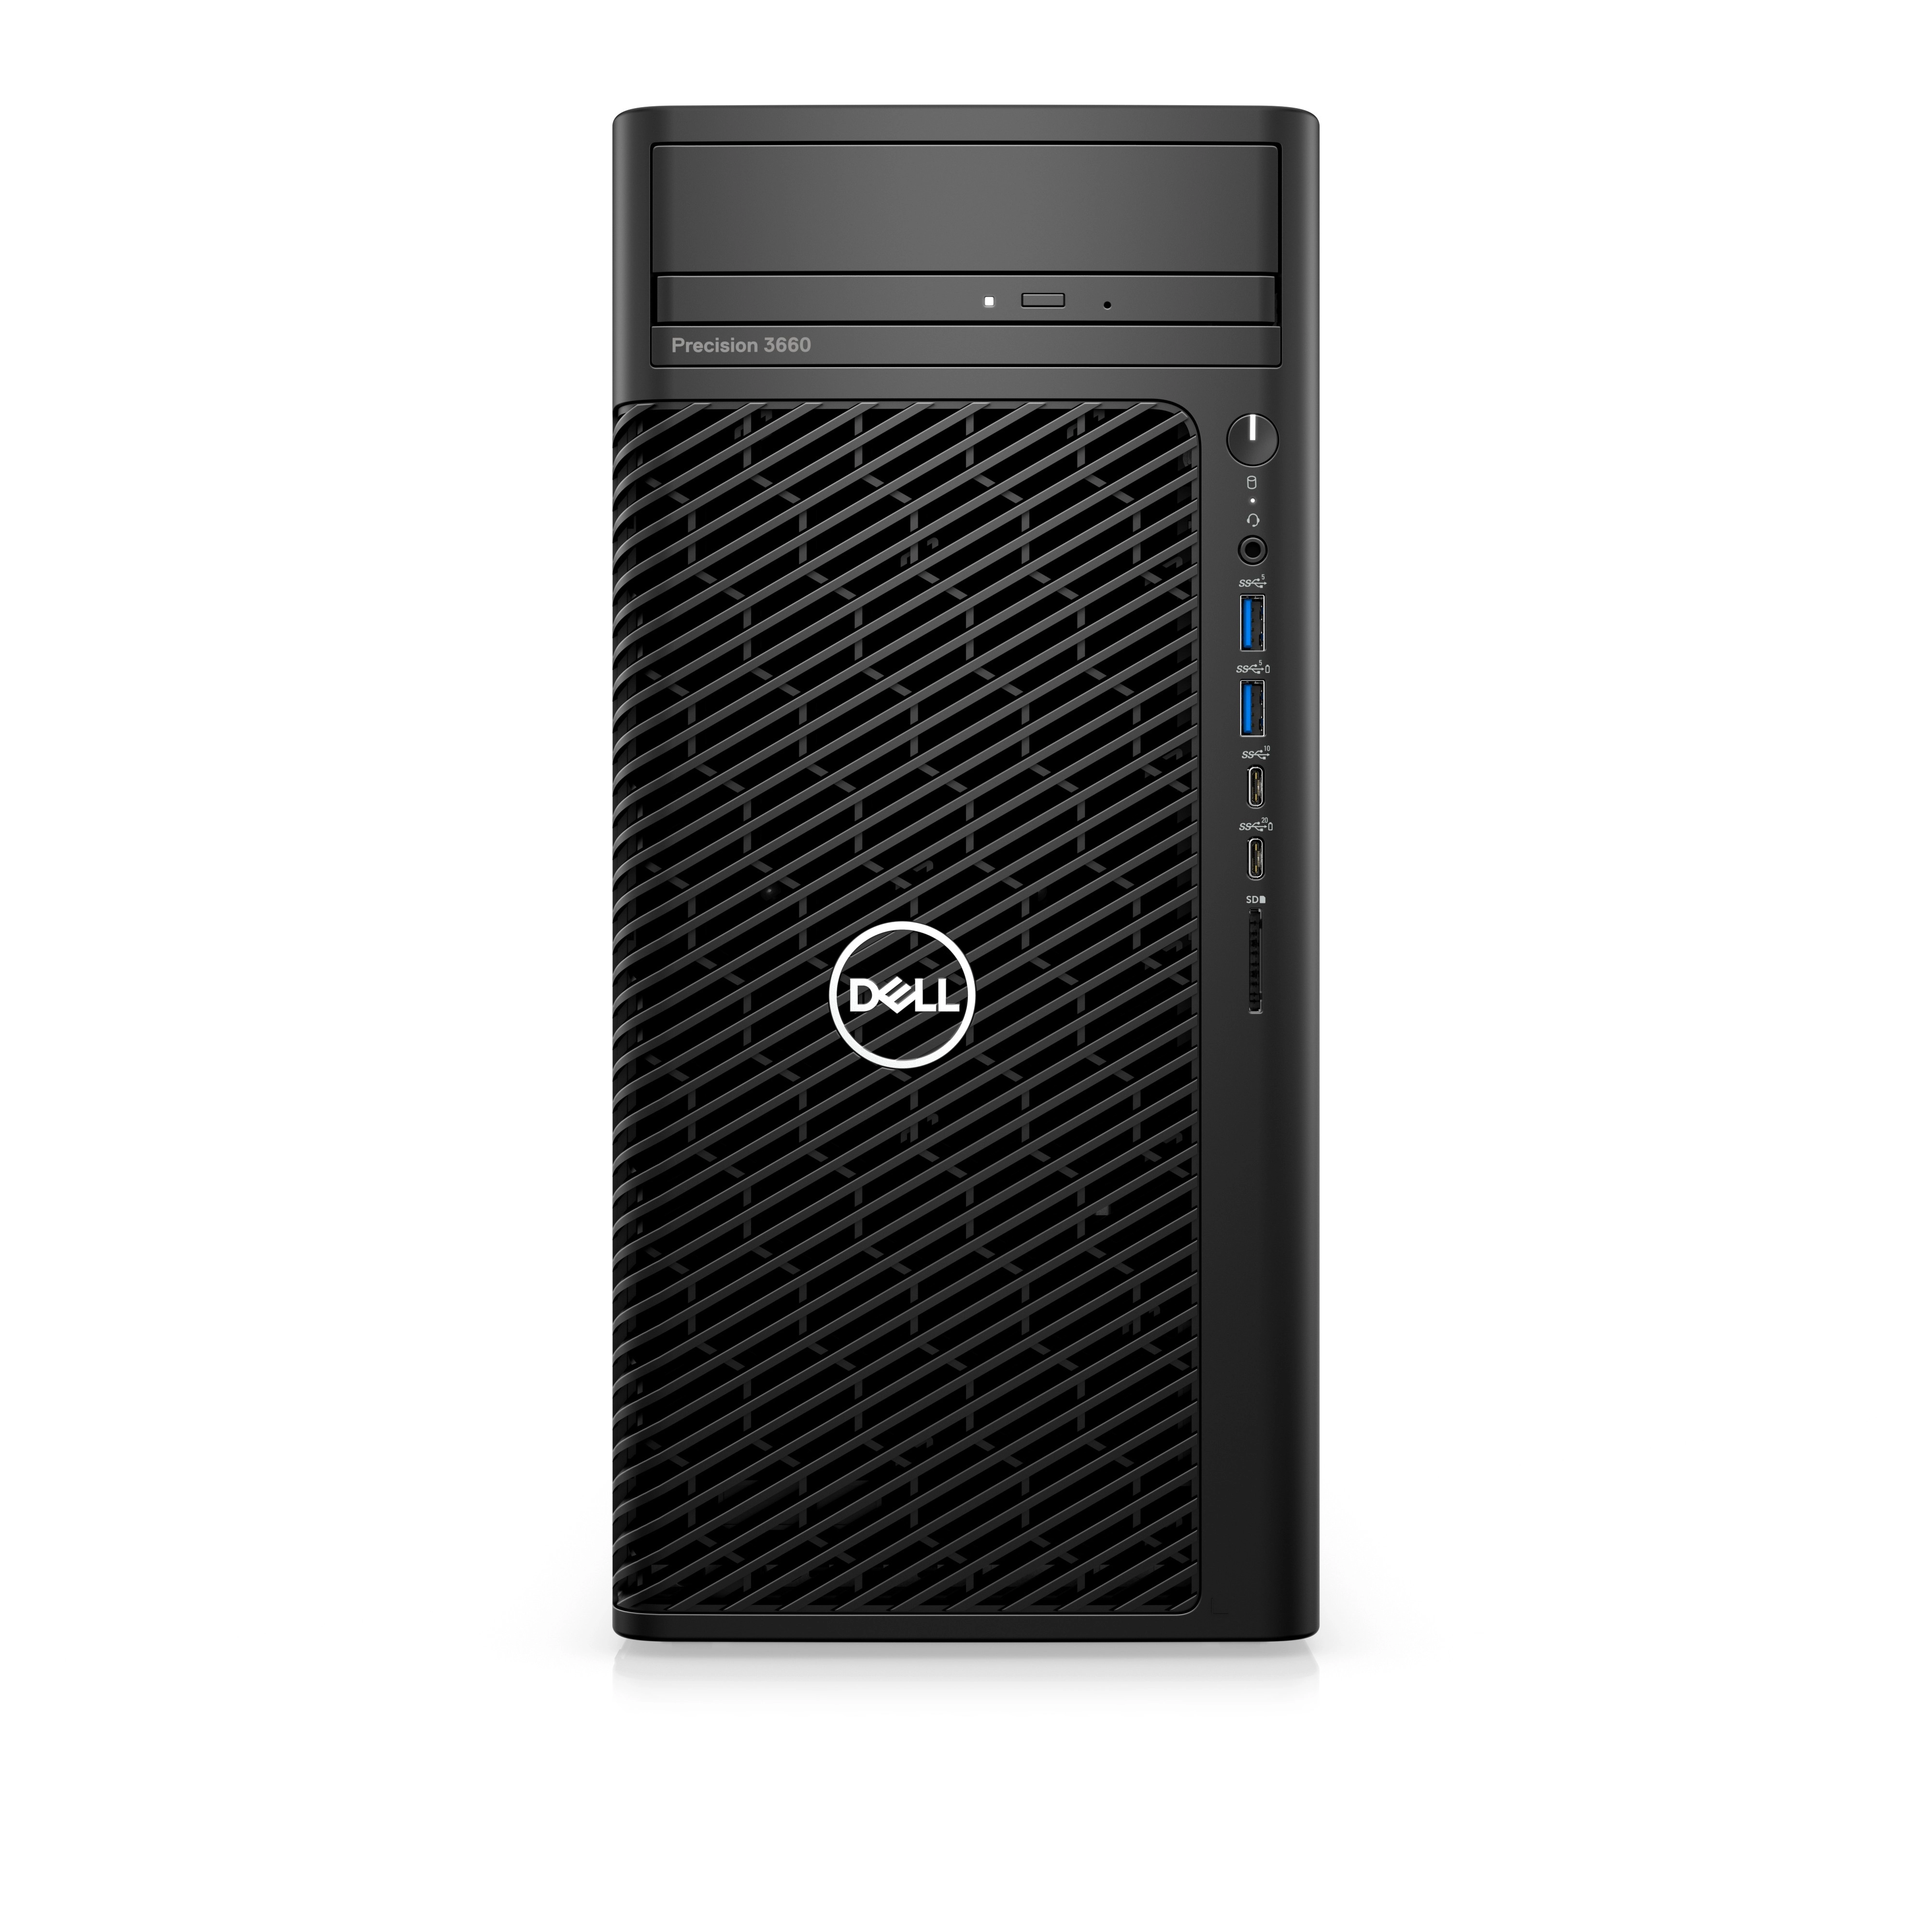 Dell Precision 3660 Tower - i7 12700K - 32GB RAM - 512GB SSD - Win 10 Pro